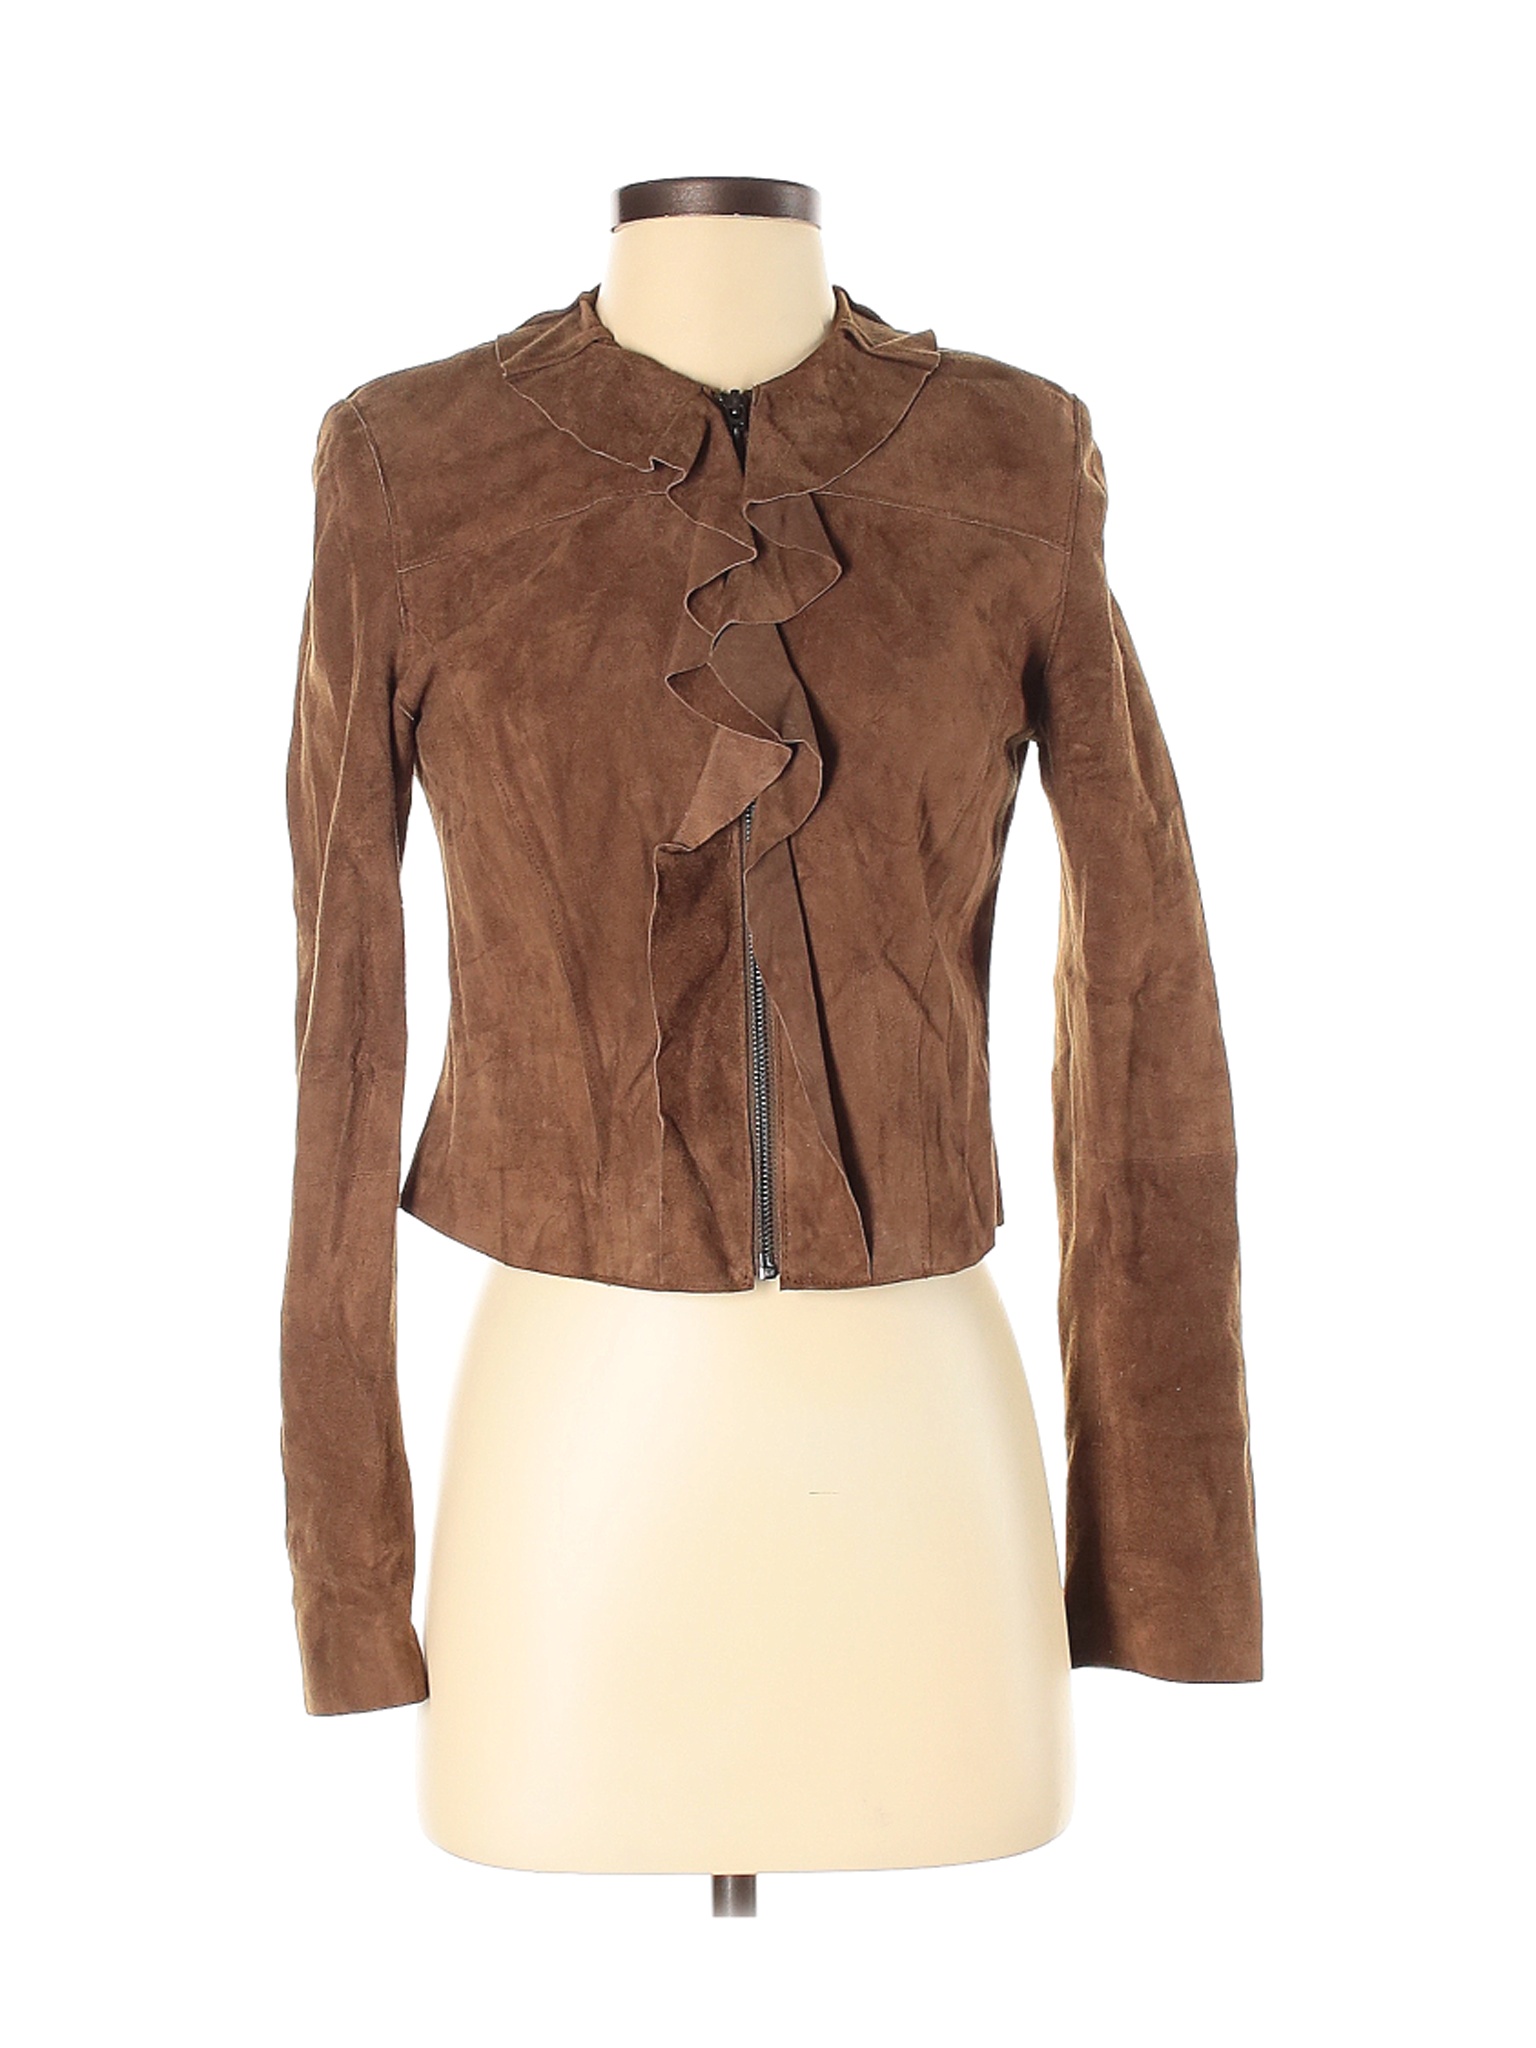 Elie Tahari Women Brown Leather Jacket 2 | eBay